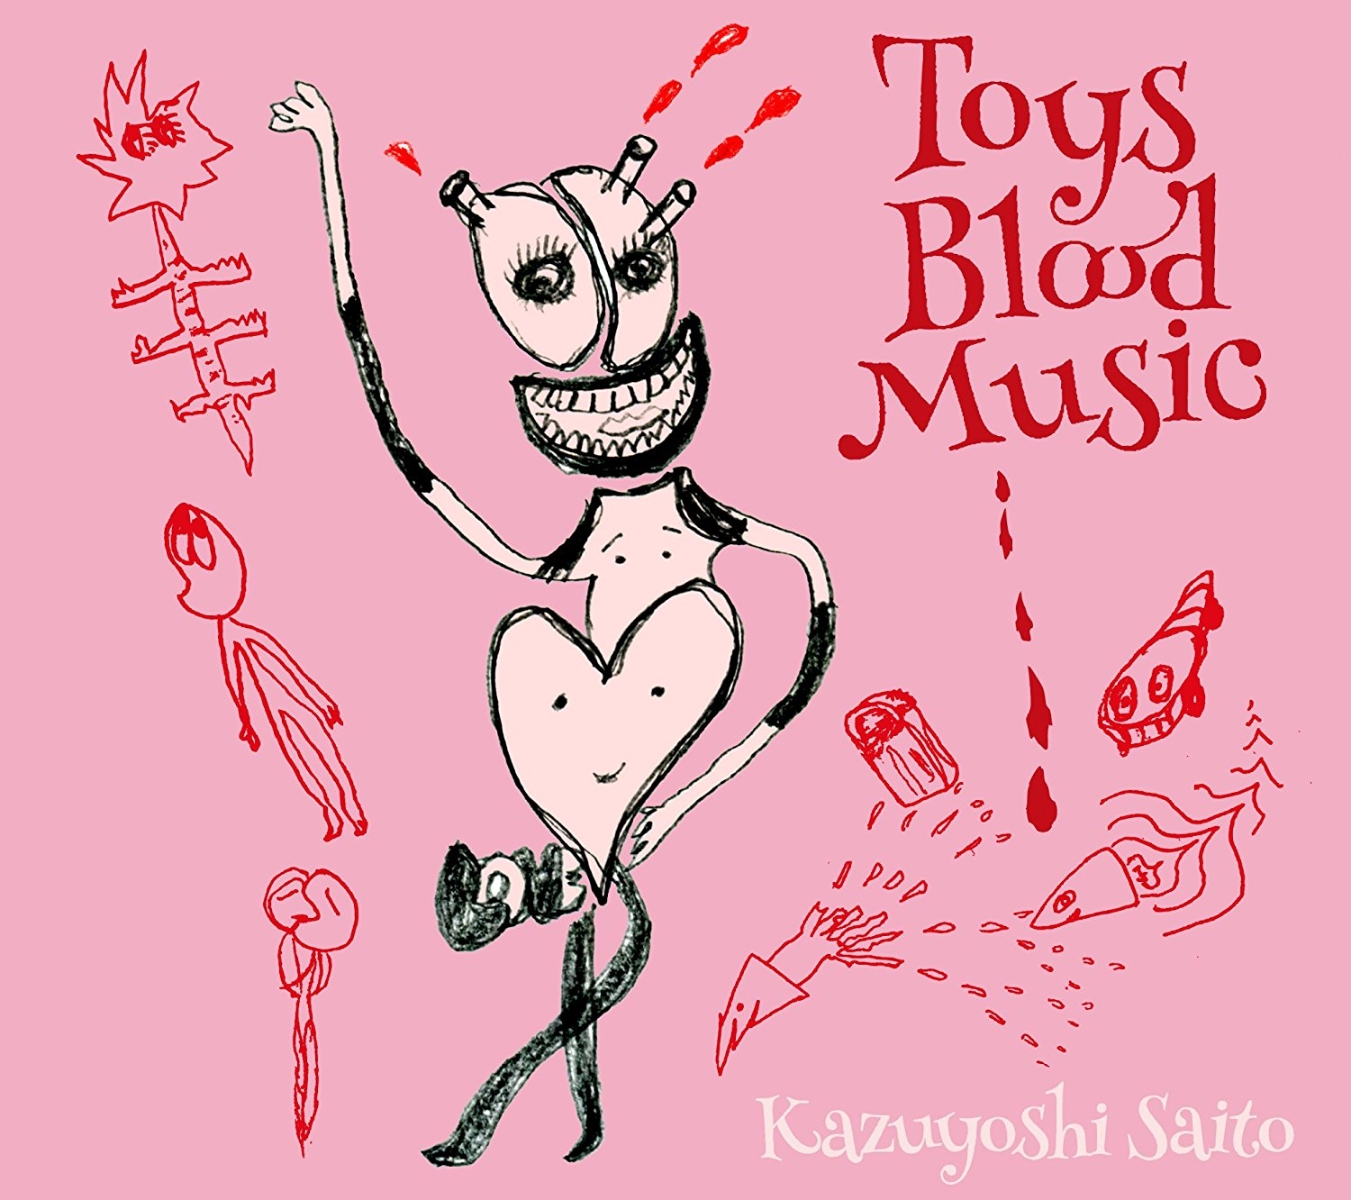 Toys Blood Music (初回限定盤 2CD)画像